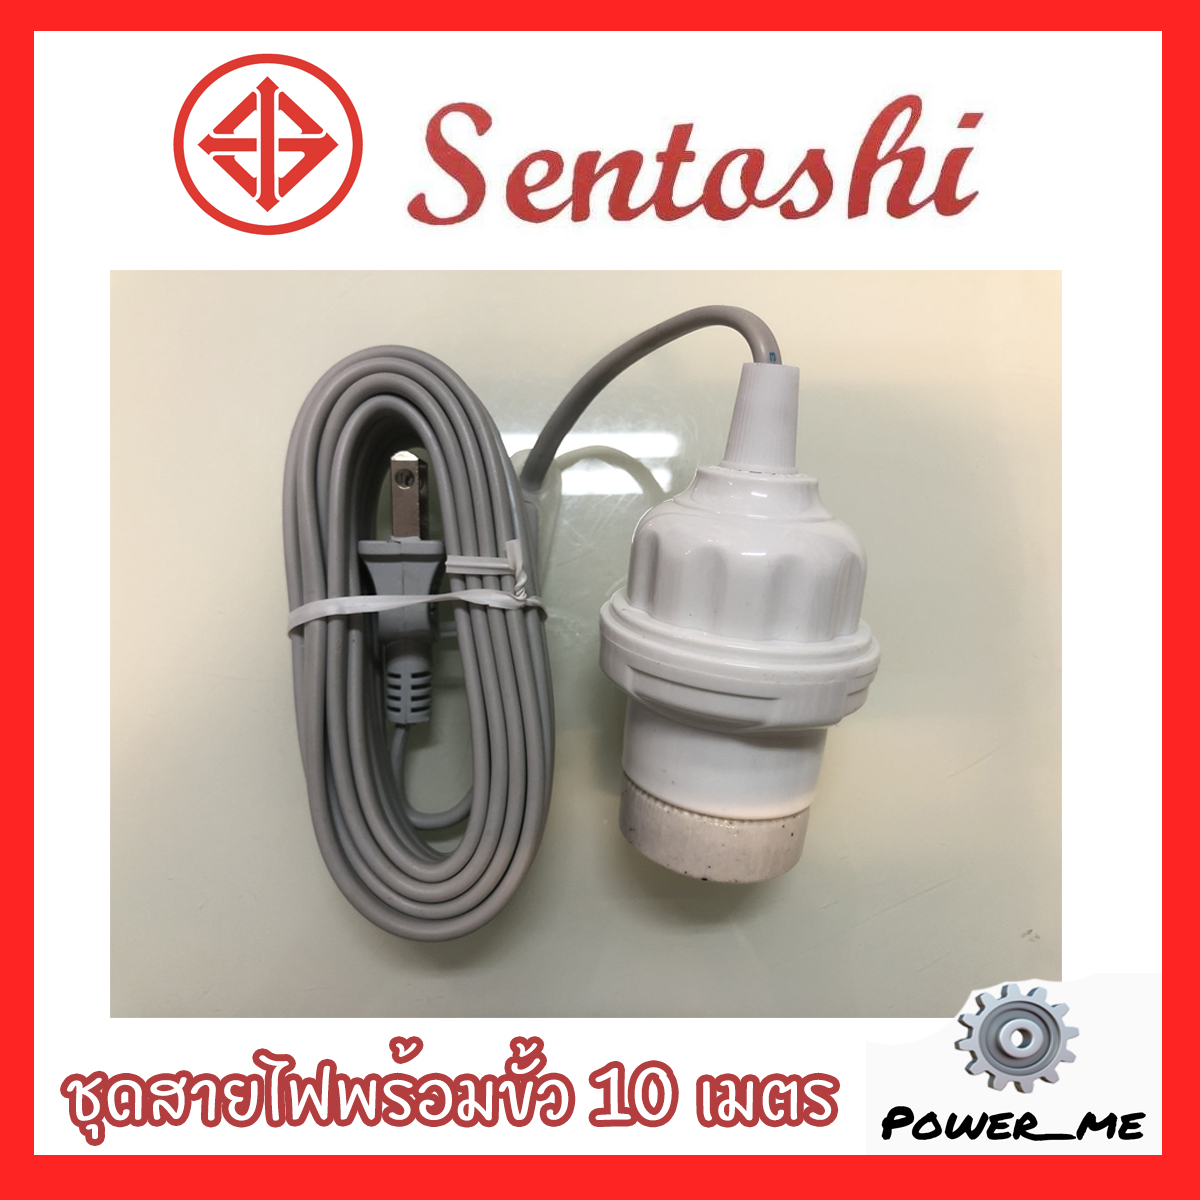 Sentoshi ชุดสายไฟสำเร็จ พร้อมขั้วเกลียว E27 / ชุดขั้วไฟสำเร็จพร้อมใช้งาน มีปลั๊กเสียบ ยาว 5เมตร 10เมตร อย่างดี  มอก. ของแท้